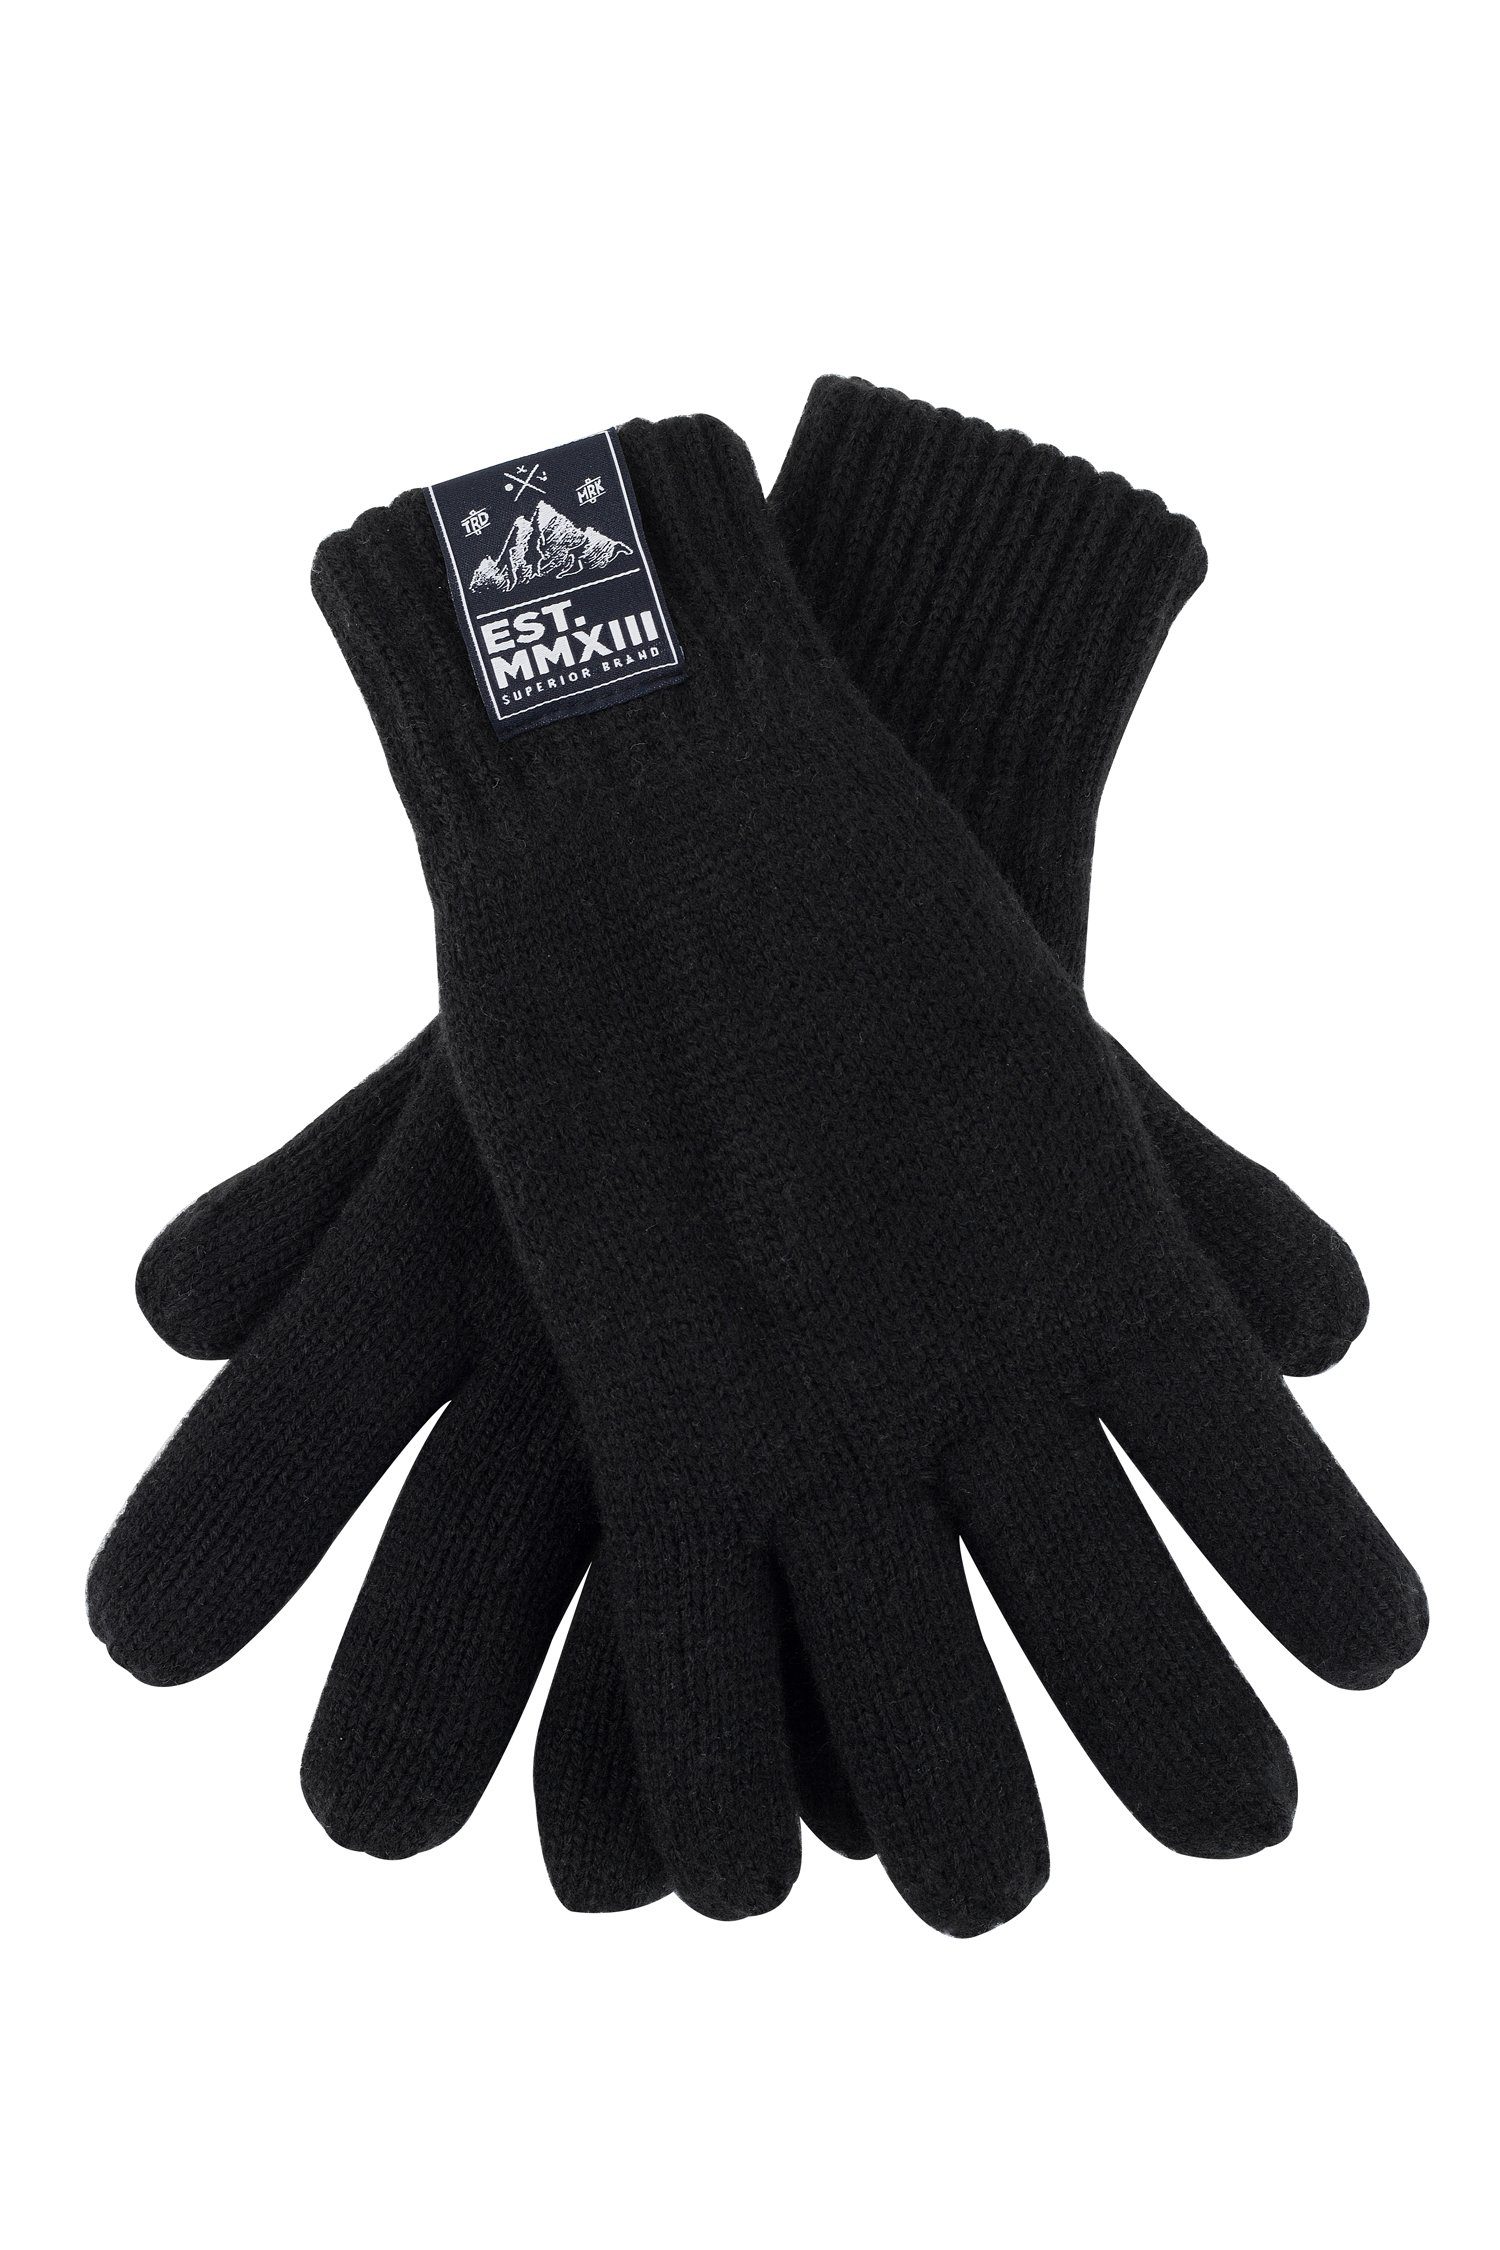 Manufaktur13 Baumwollhandschuhe Rough Gloves - Handschuhe/ Vollfingerhanschuhe Schwarz